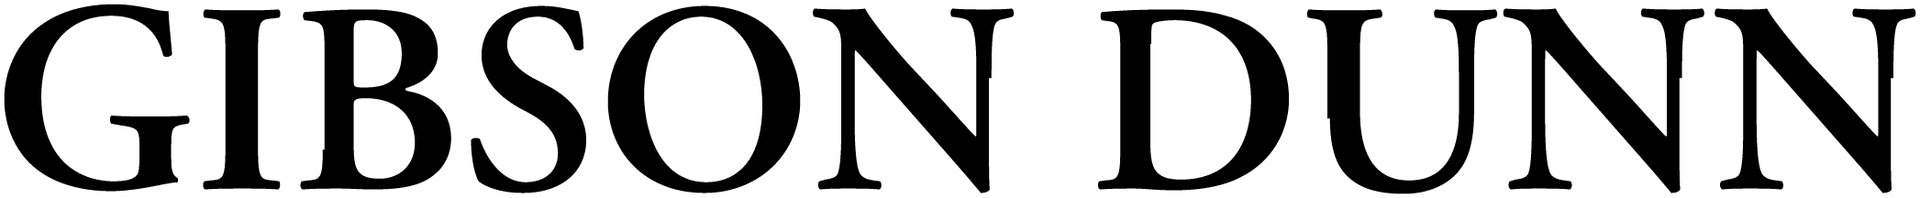 Gibson Dunn Logo